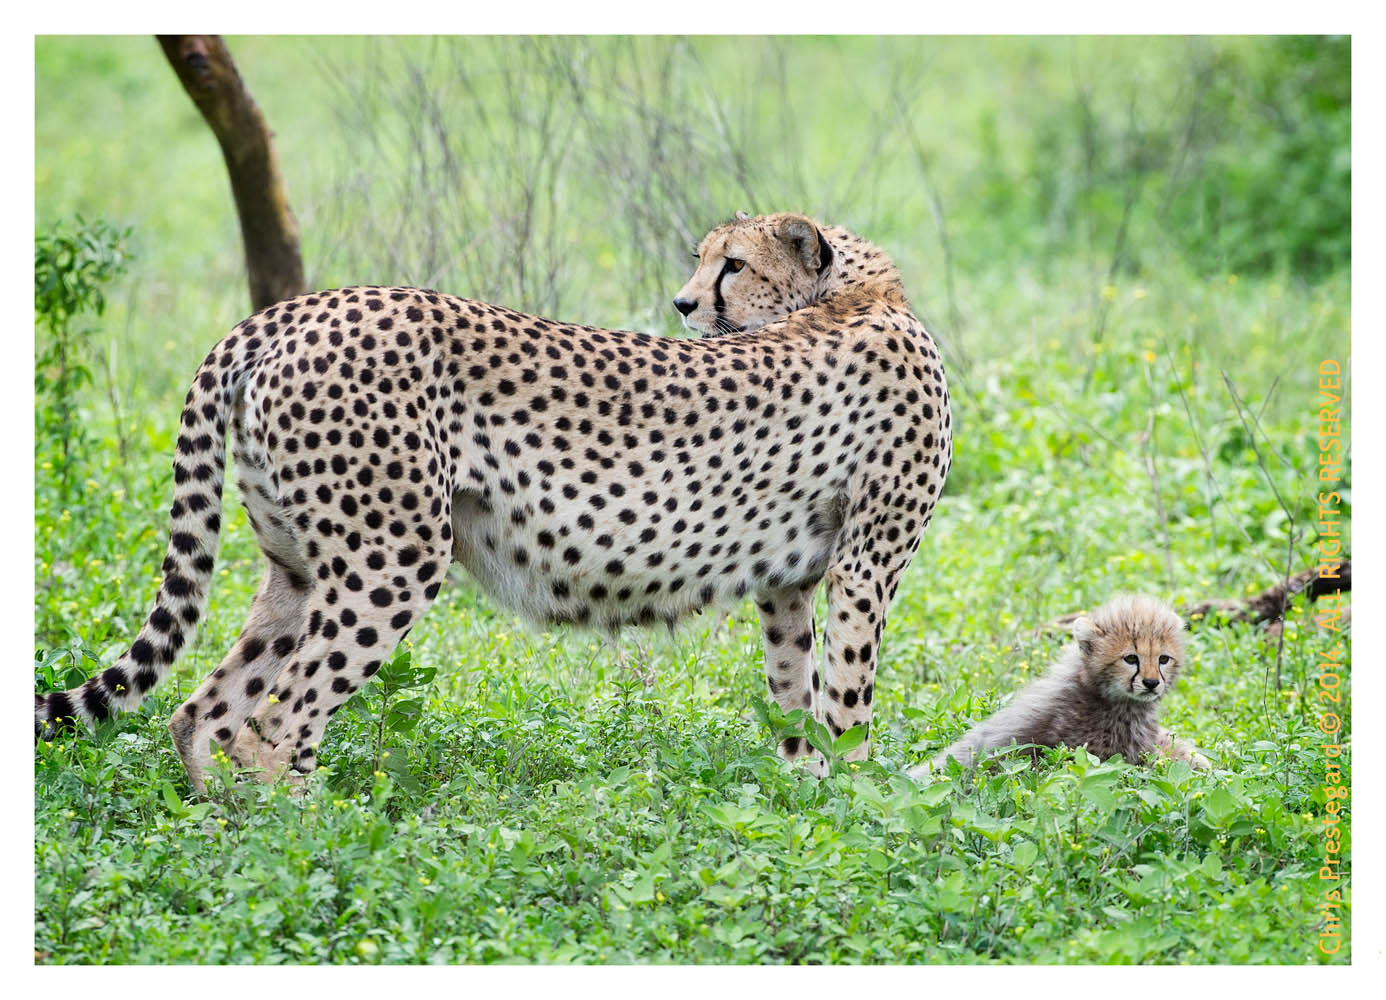 cheetah9789-Apr8-2014